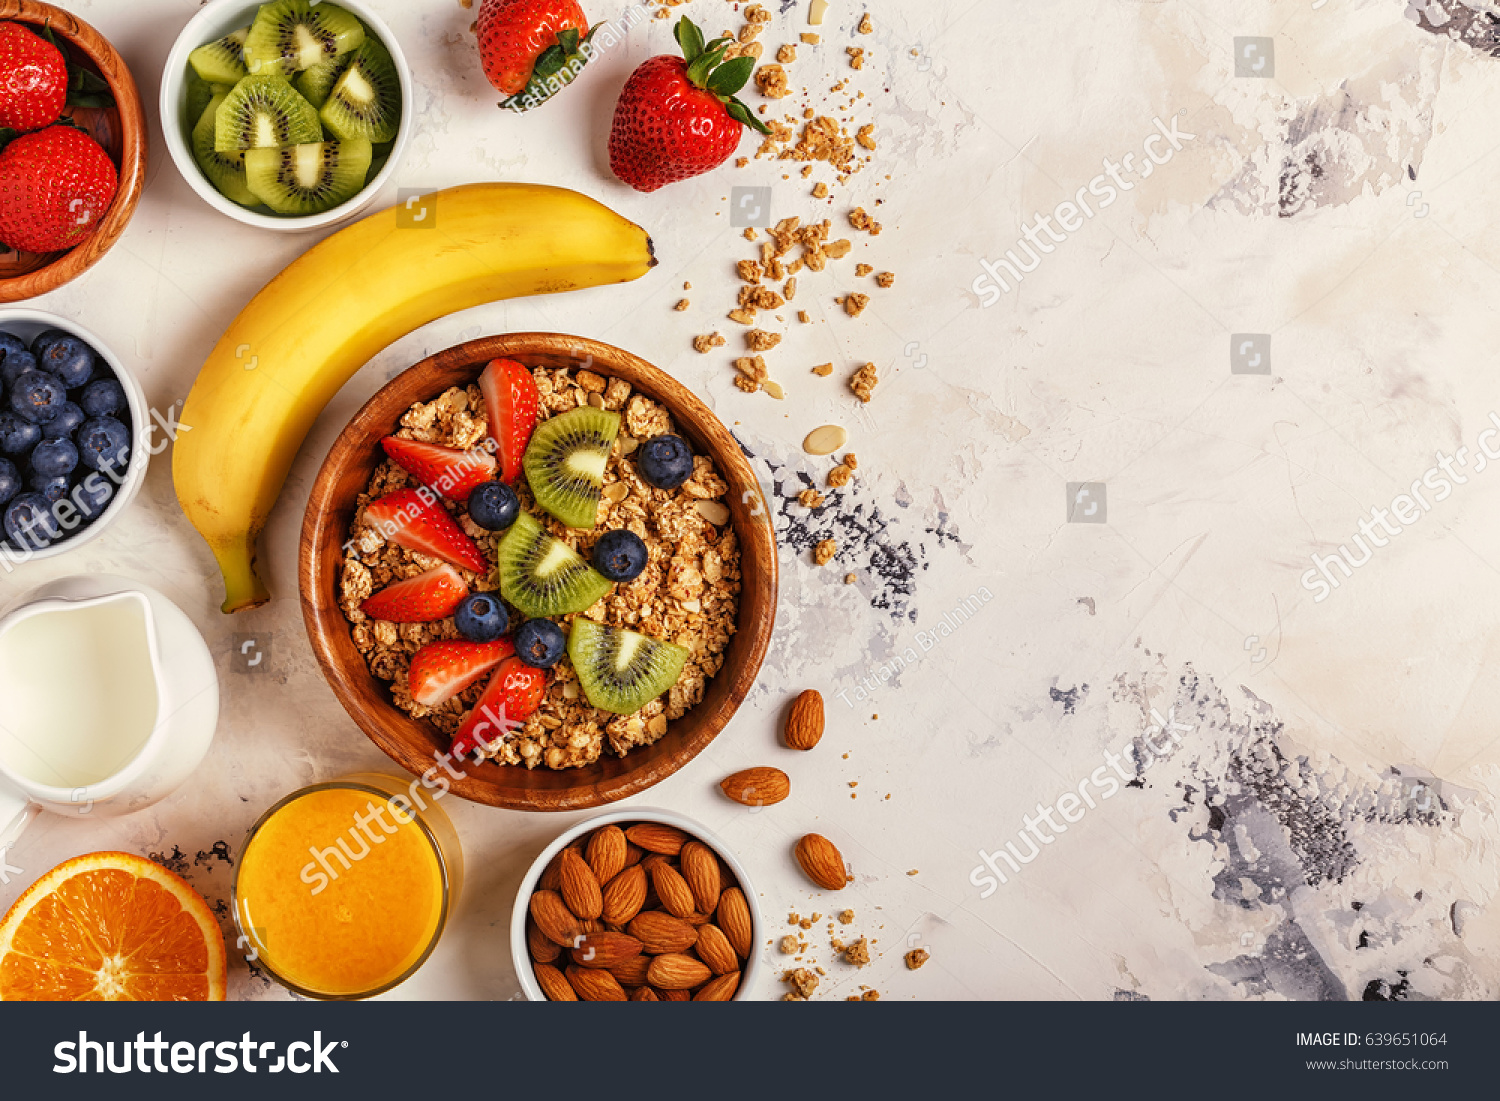 Healthy breakfast - bowl of muesli, berries and fruit, nuts, orange juice, milk, top view. #639651064